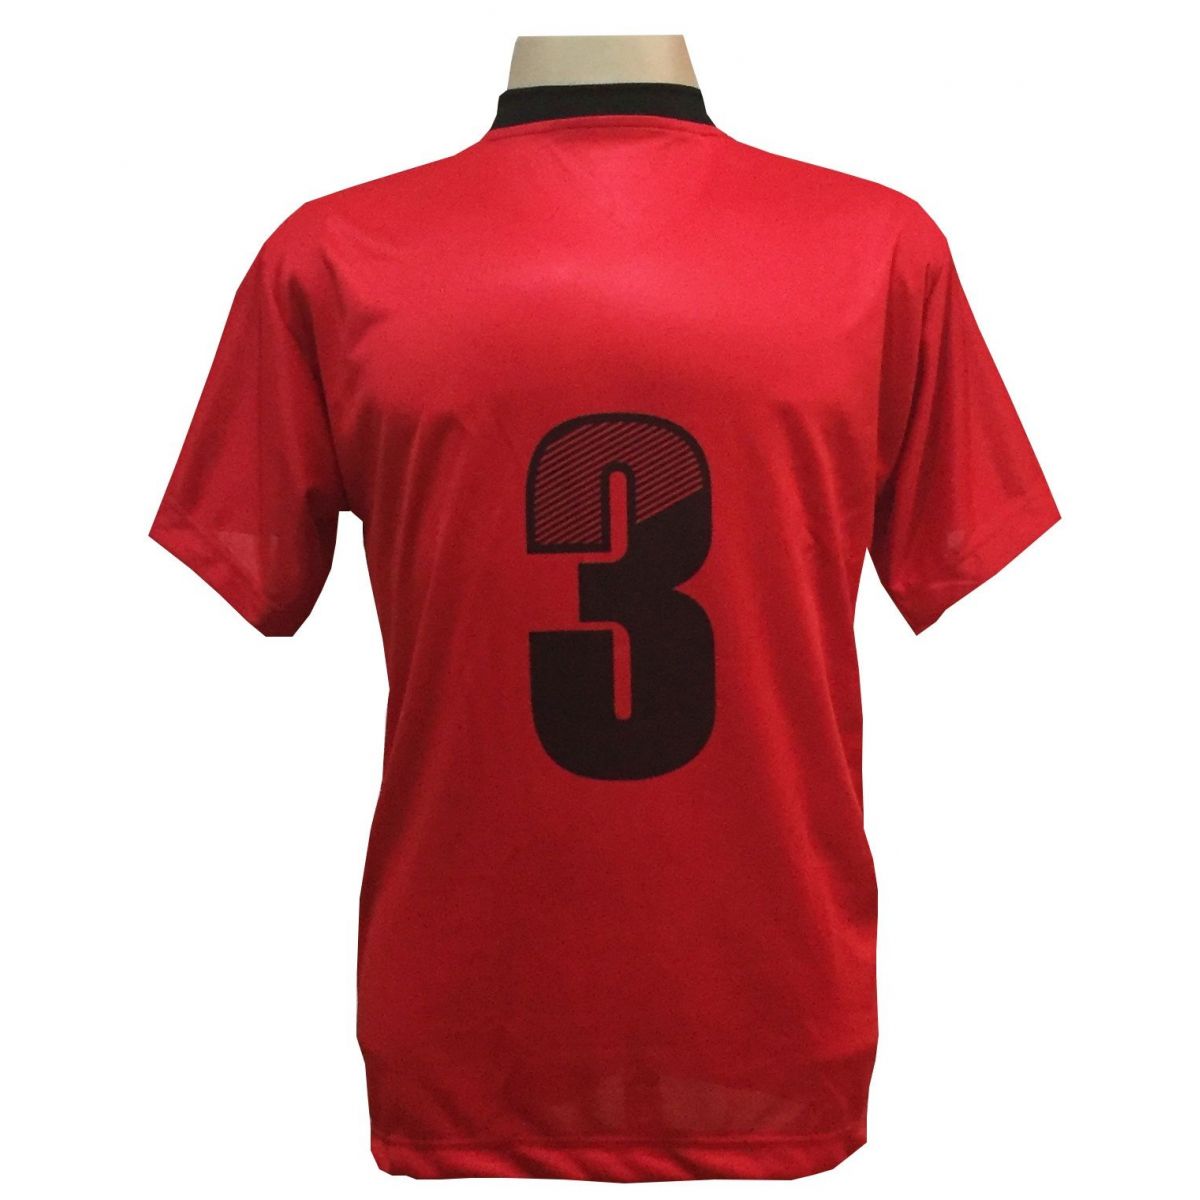 Uniforme Completo modelo Roma 18+1 (18 Camisas Vermelho/Preto + 18 Calções Copa Preto/Vermelho + 18 Pares de Meiões Pretos + 1 Conjunto de Goleiro) + Brindes